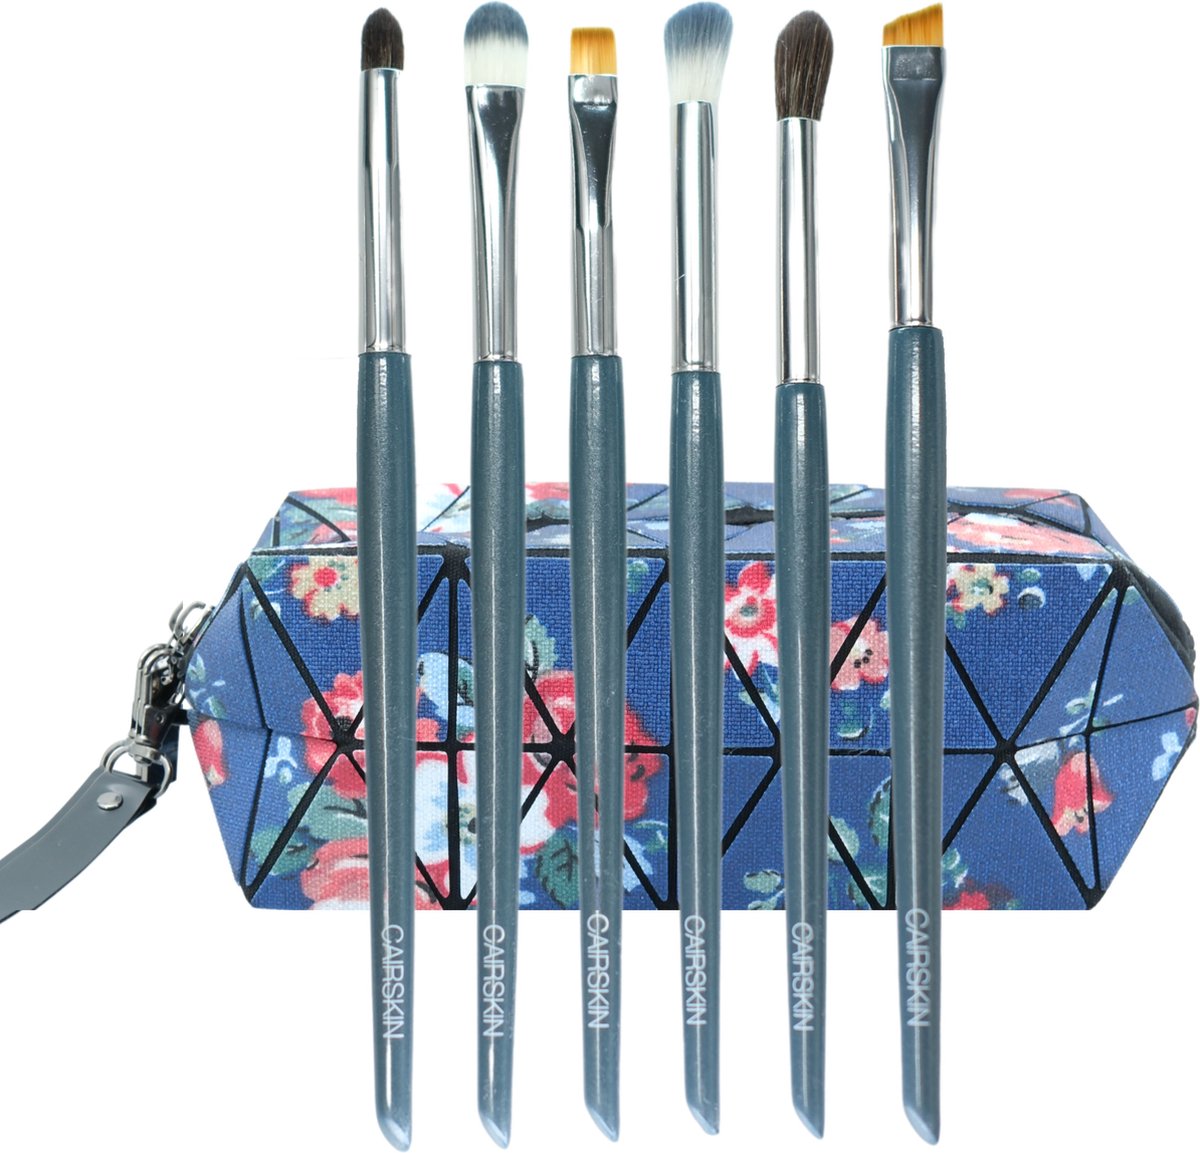 CAIRSKIN Cadet Blue Brush Set - 6 Classic Eye Bushes for Professional Makeup - Visagie Kwastenset voor Ogen - Oogschaduw en Wenkbrouwen Set - Inclusief Beauty Bag